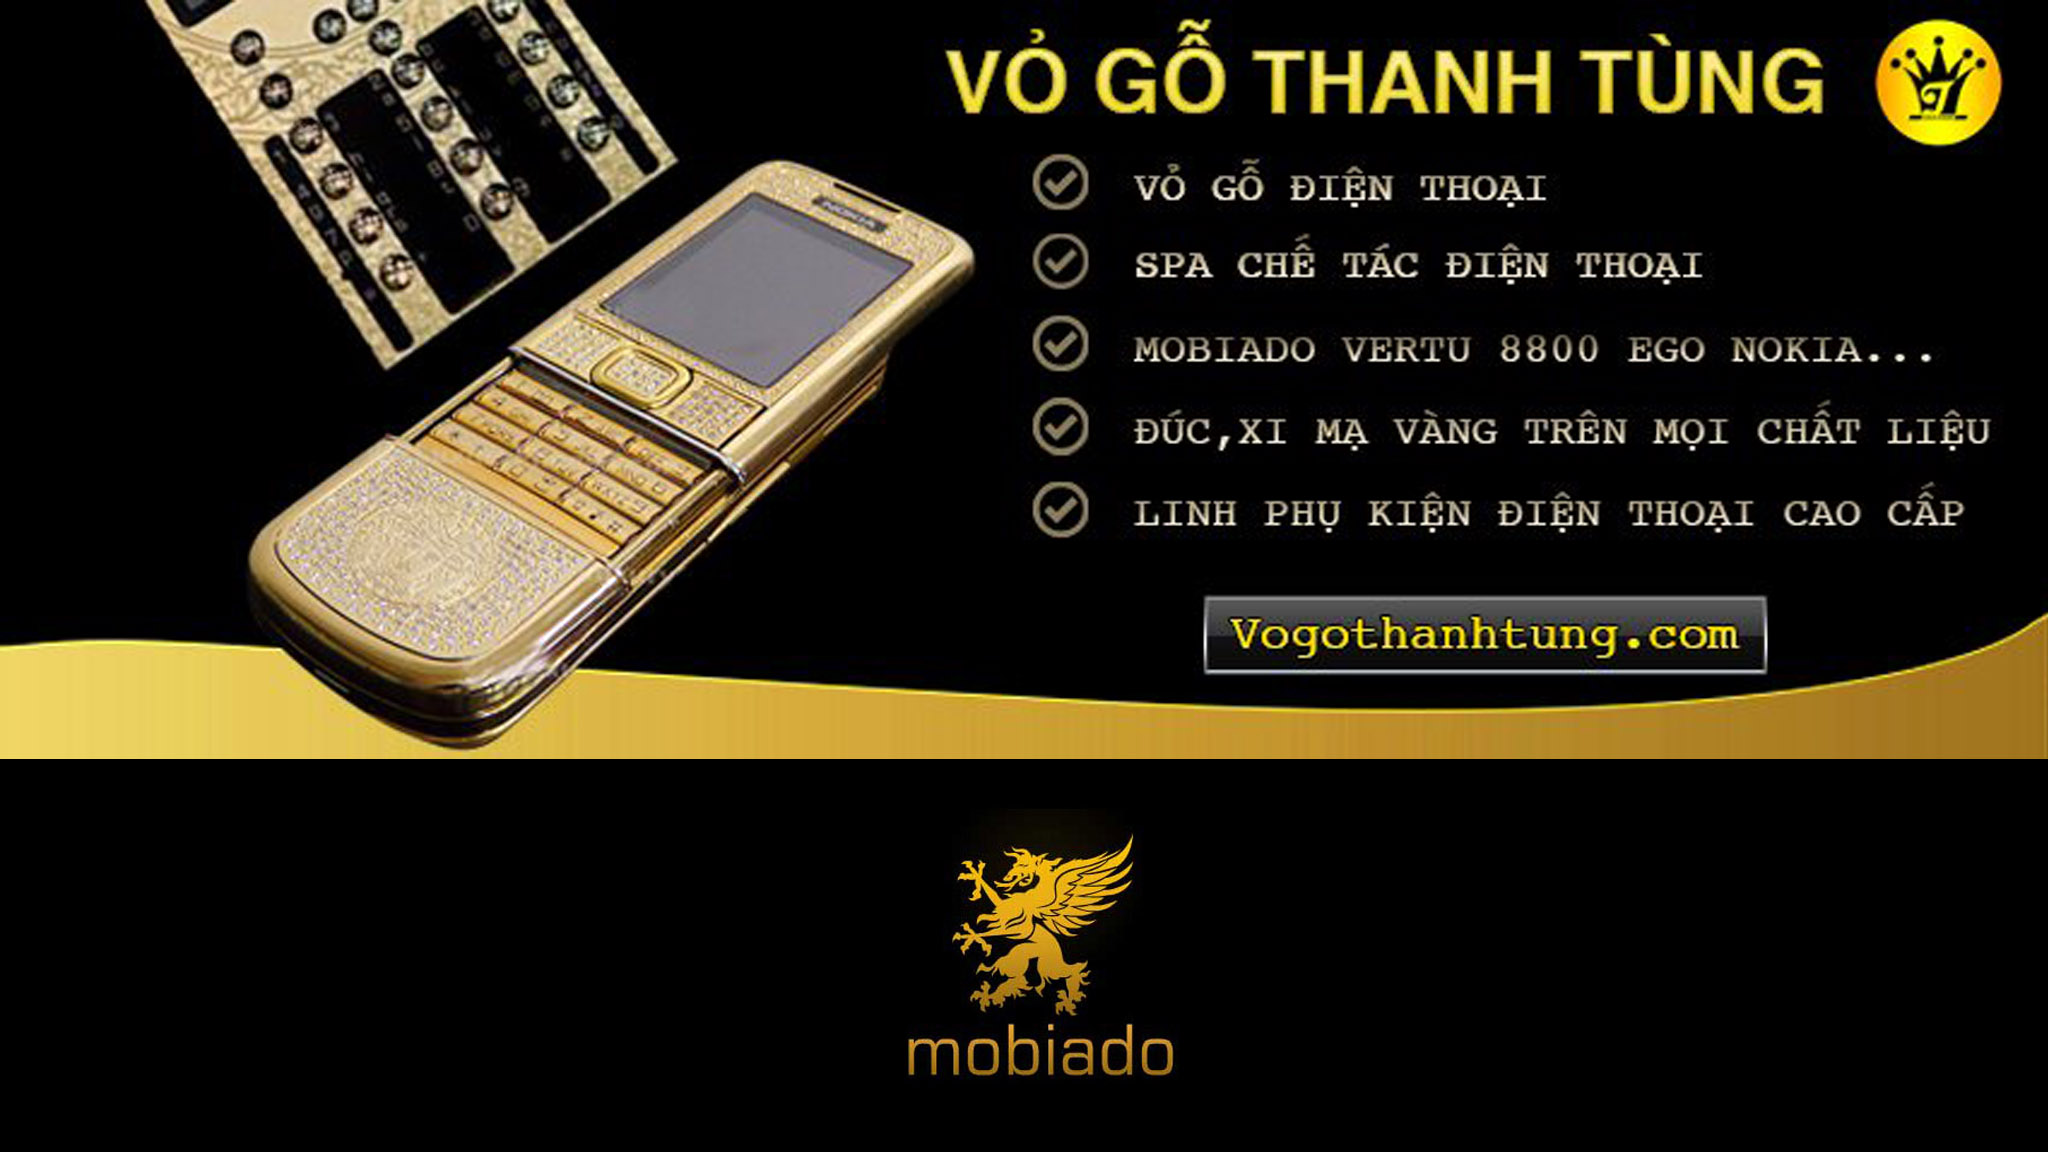 Trung tâm mua bán bảo hành sửa chữa Nokia 8800, Mobiado , vertu , samsung Ego, Gresso ,Crypto , GoldVish , iPhone Kings, Bellperre , TAG Heuer và các dòng luxury phone 